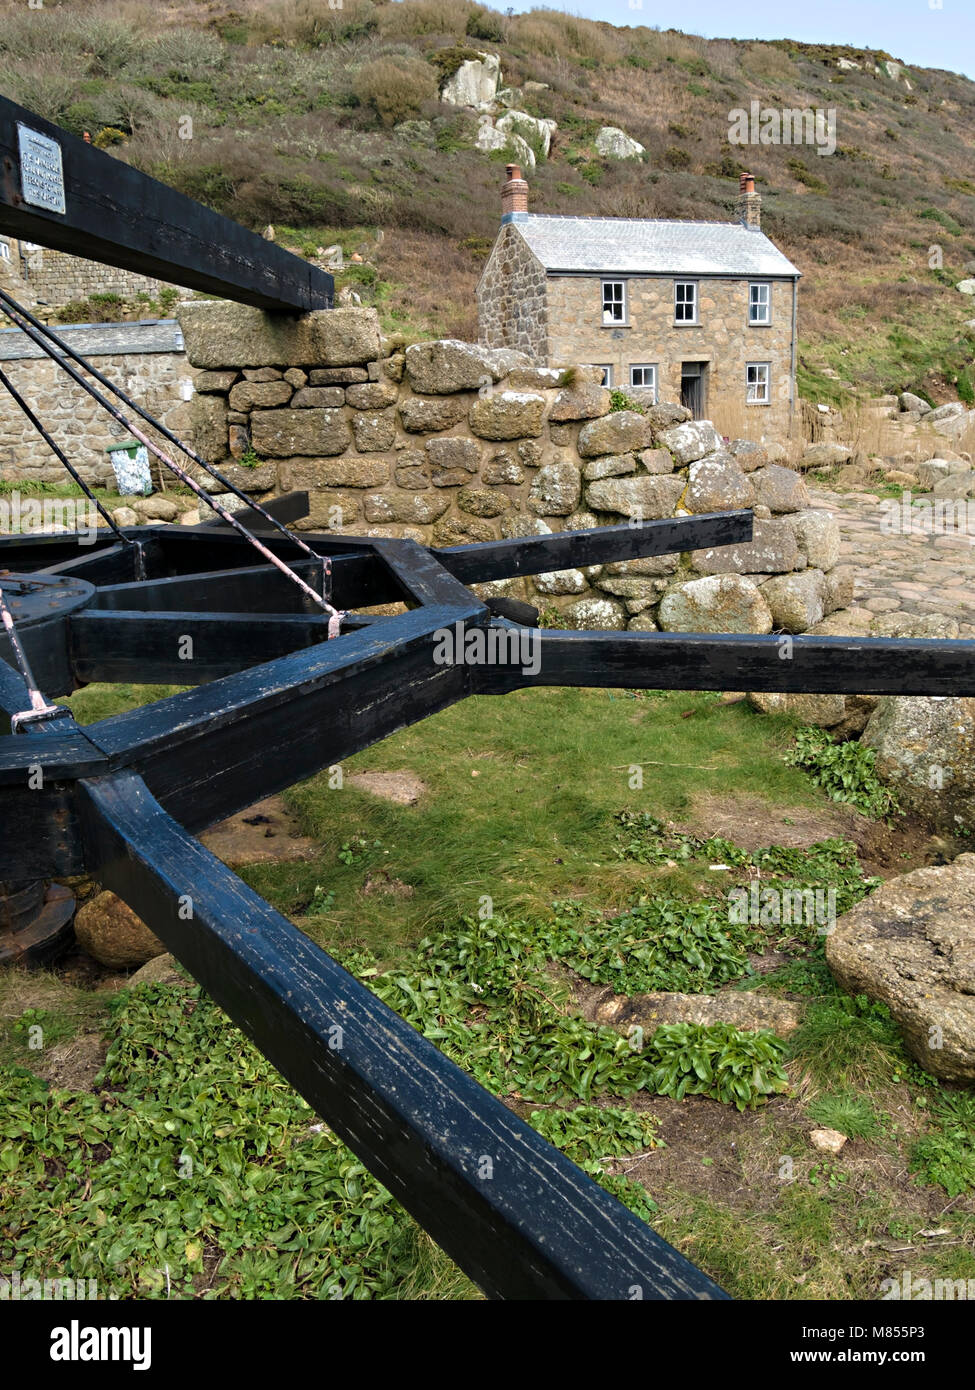 Alte Winde boot Winde und Cornish Cottage am Hafen von Penberth Cove, Cornwall, England, Großbritannien. Die Lage war während der Dreharbeiten Poldark BBC TV-Serie verwendet. Stockfoto